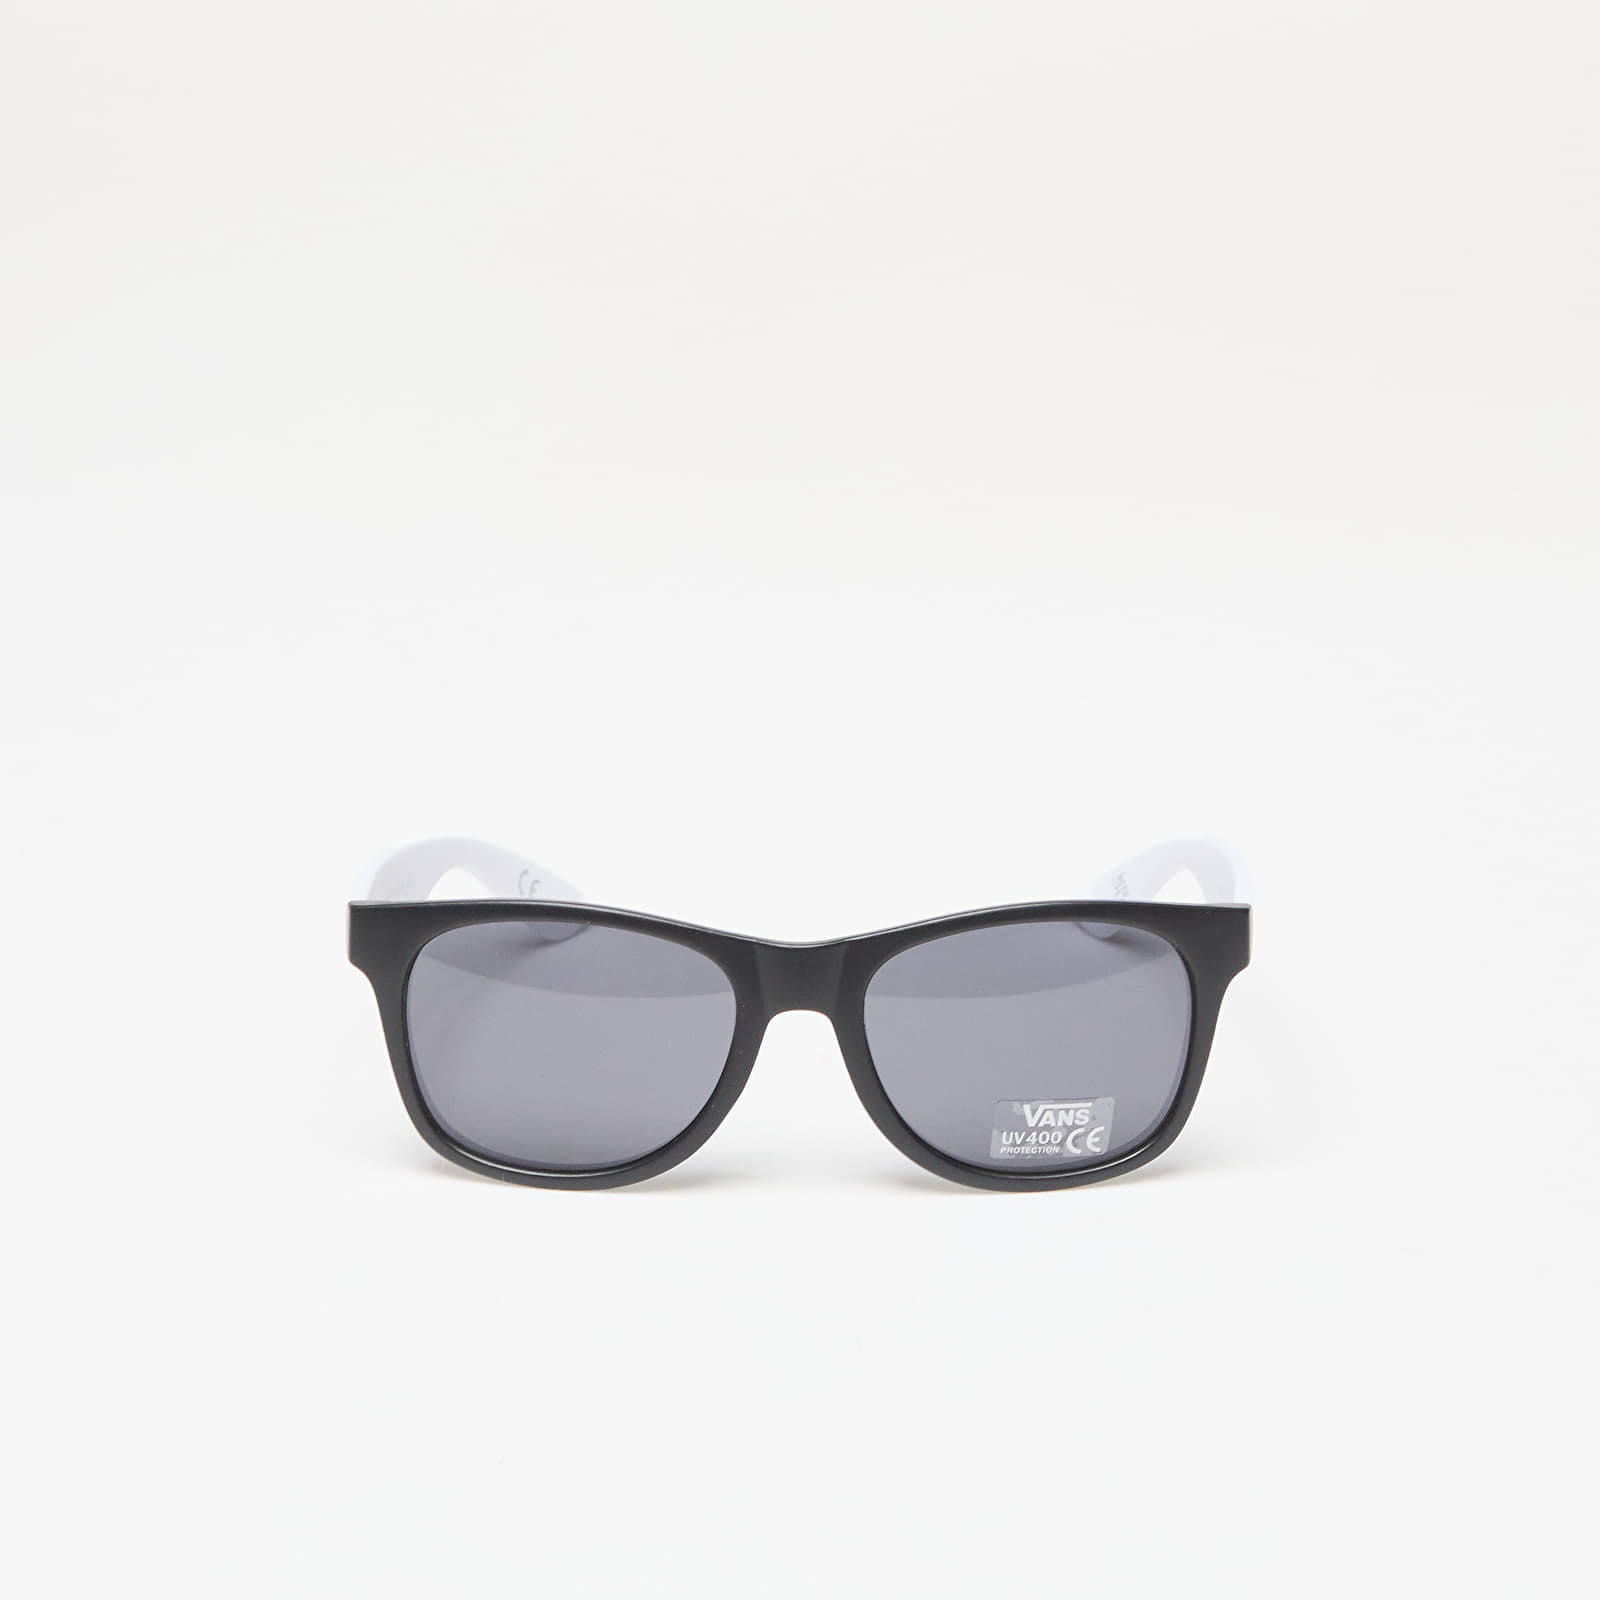 Vans - Spicoli 4 Shades Black/White - Sunglasses